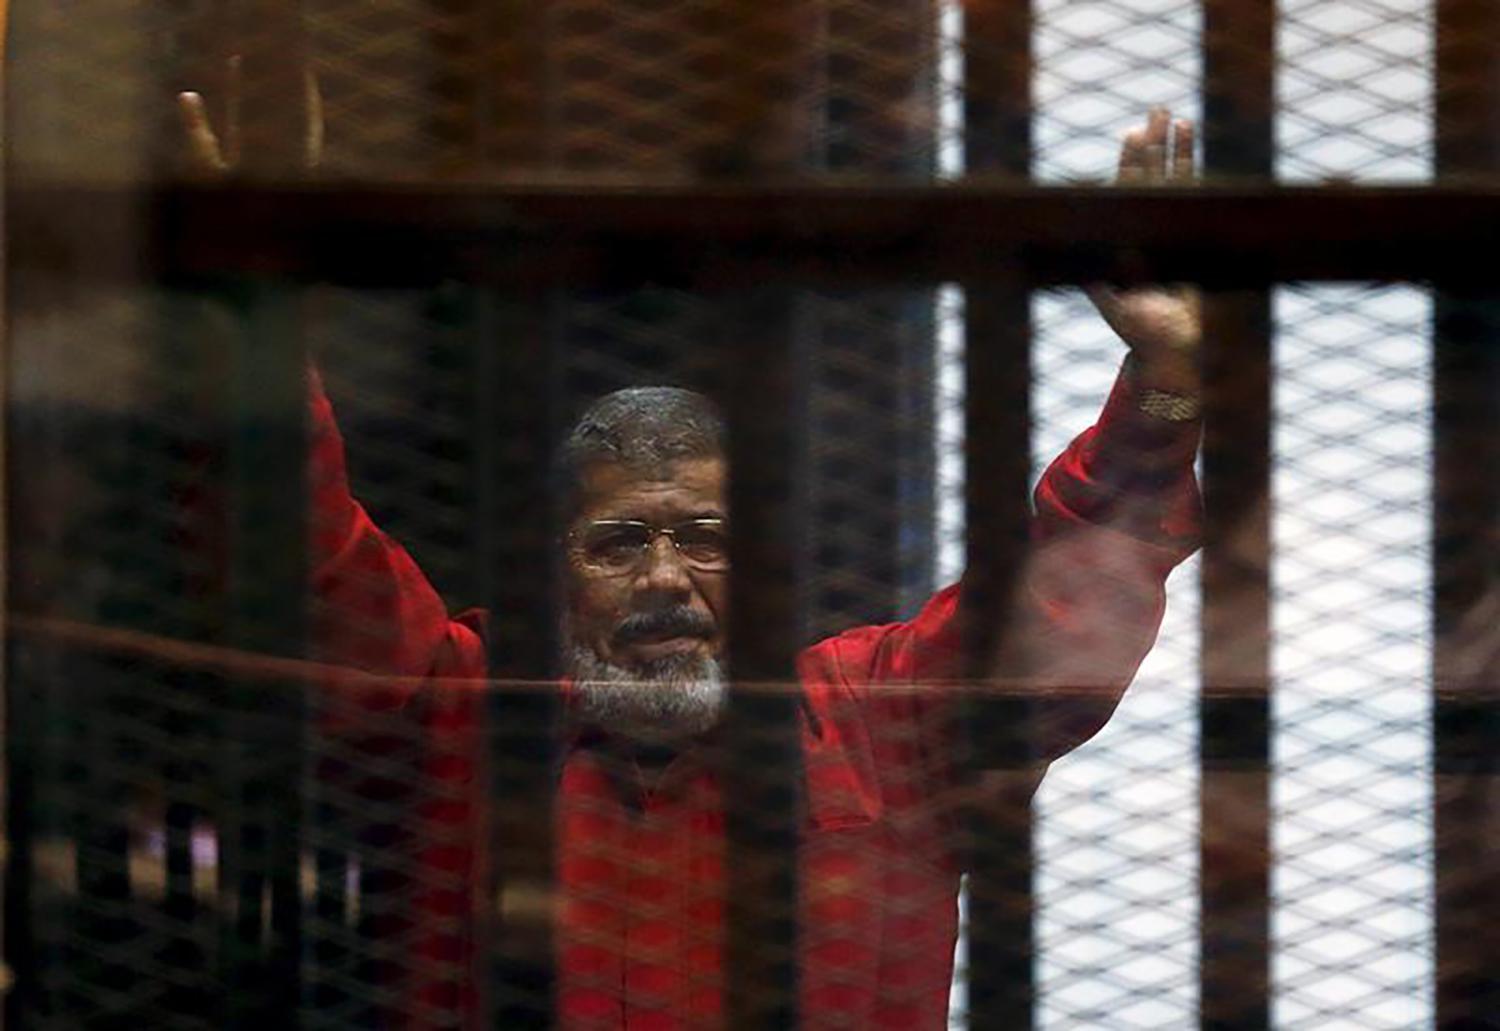 Egypt: Morsy’s Isolation Violates Rights